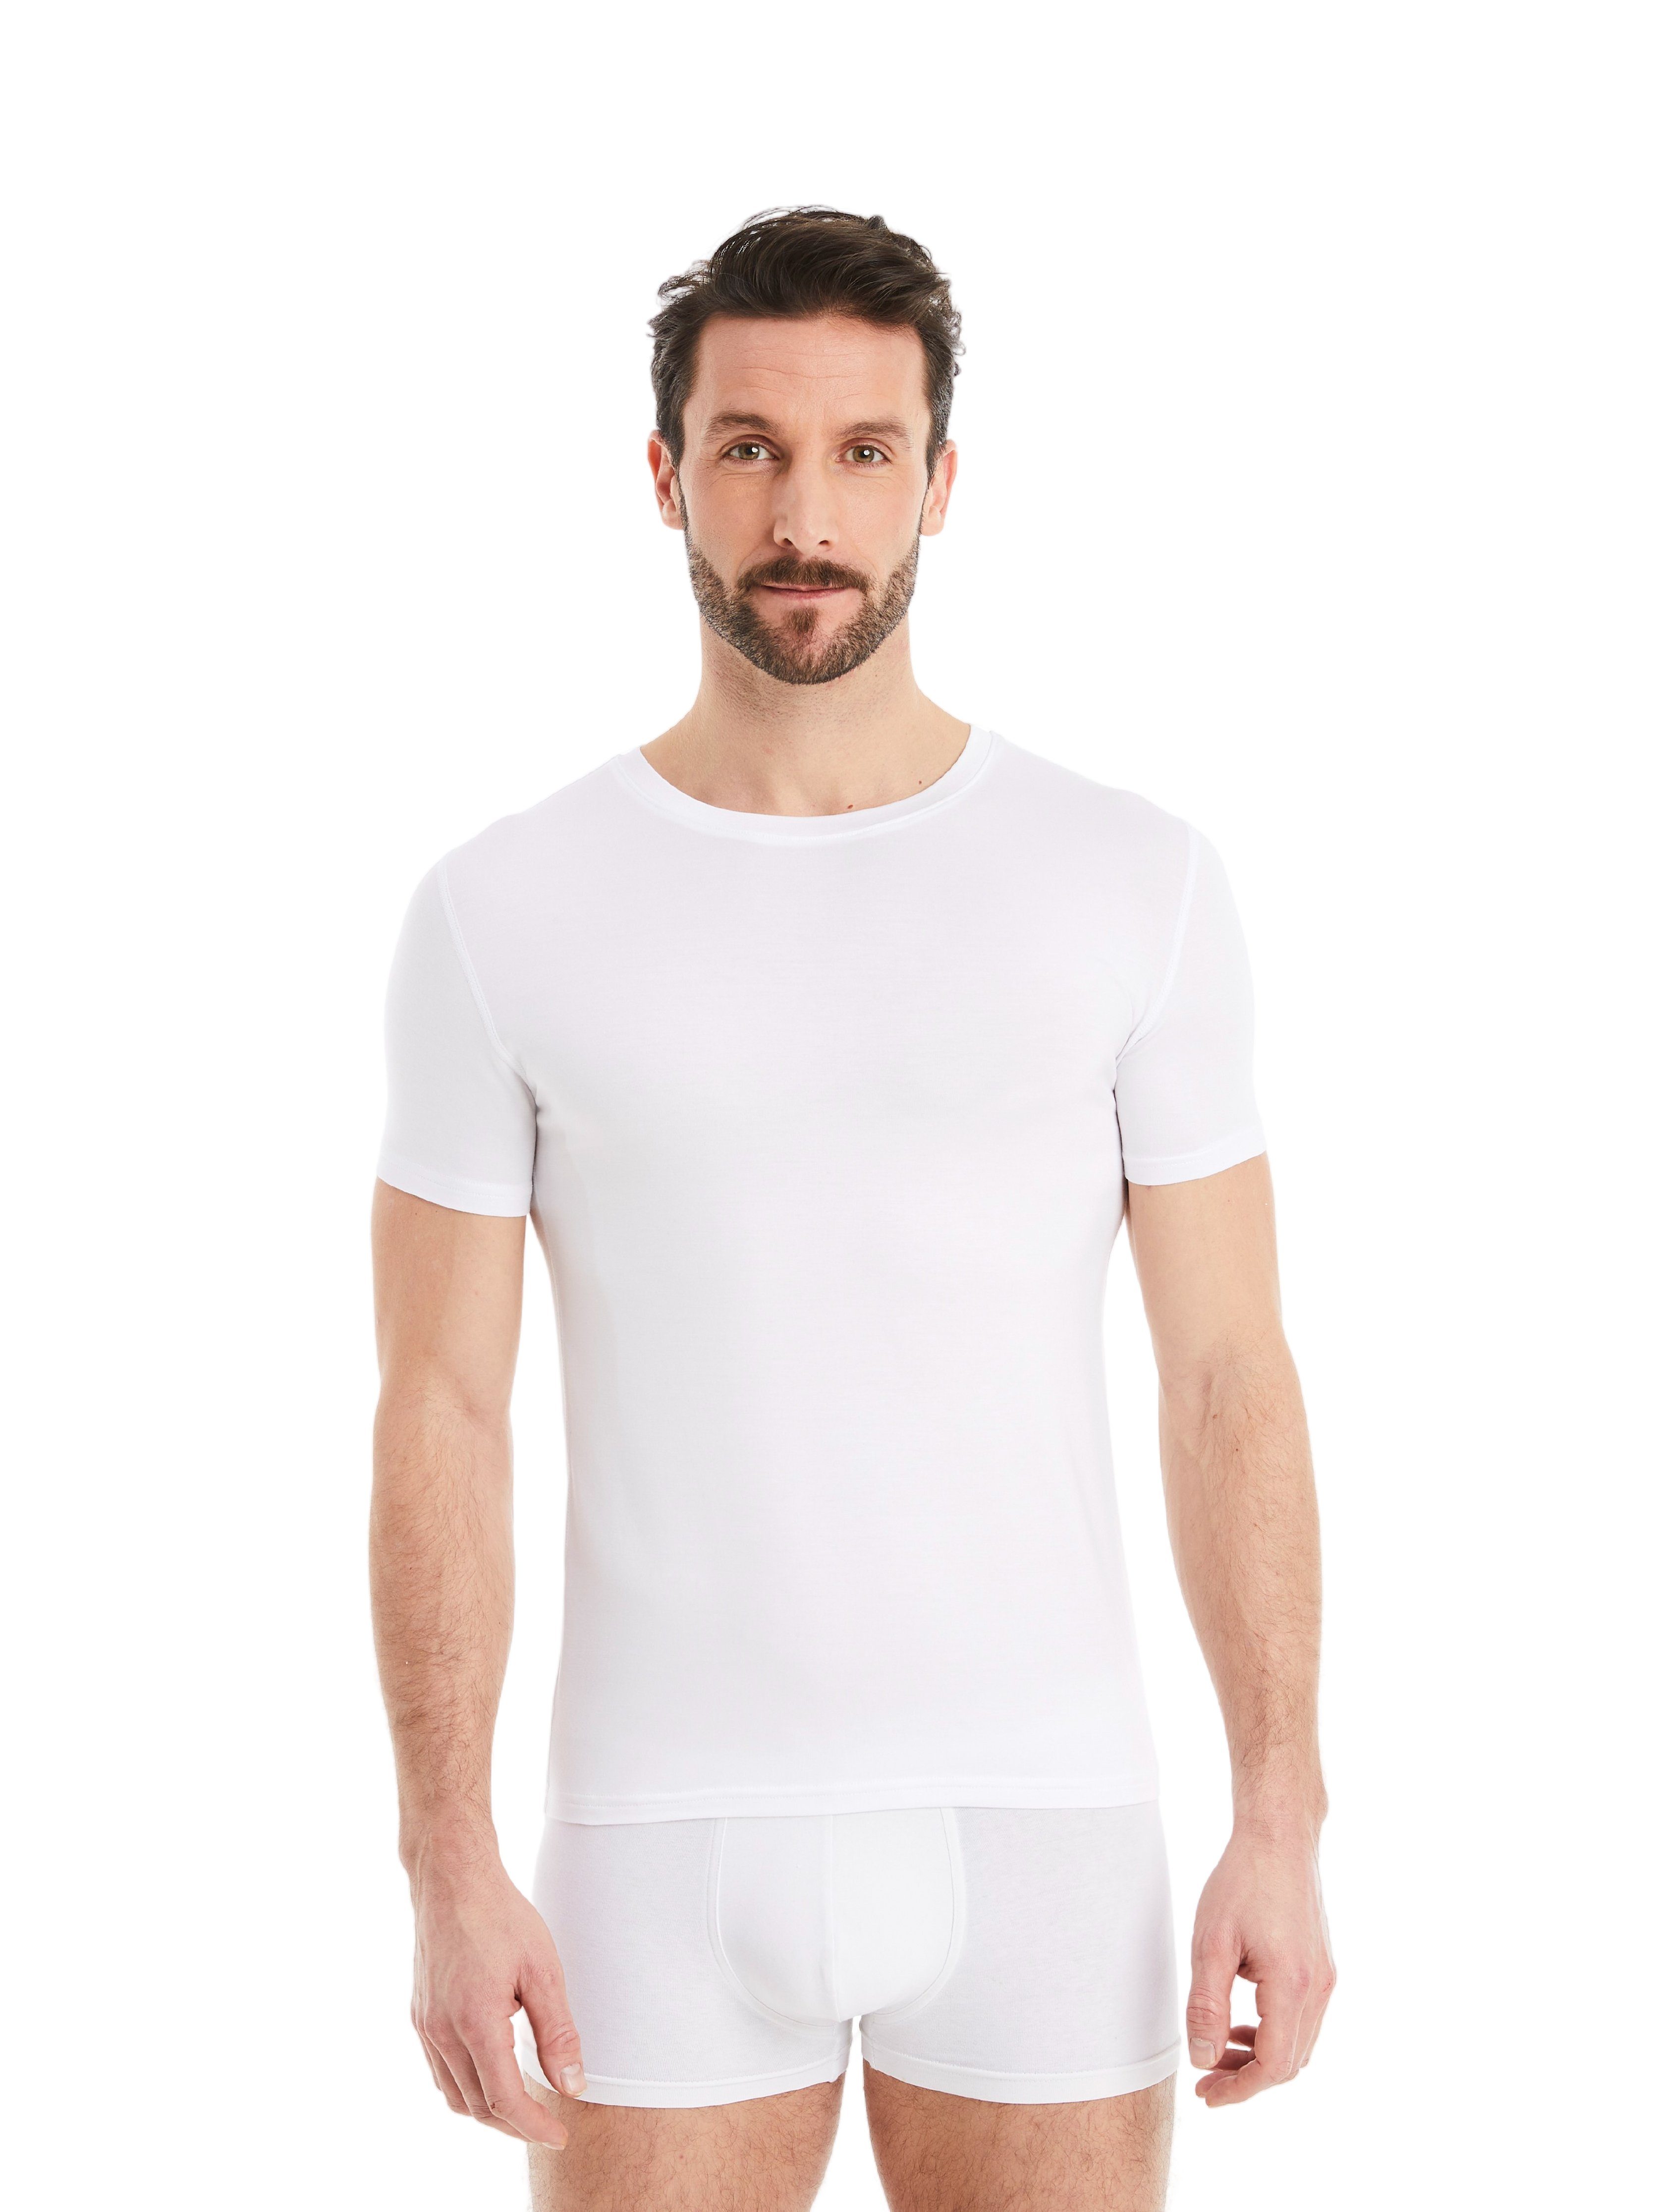 FINN Design Unterhemd Business Unterhemd Kurzarm mit Rundhals Herren feiner Micro-Modal Stoff, maximaler Tragekomfort Weiß